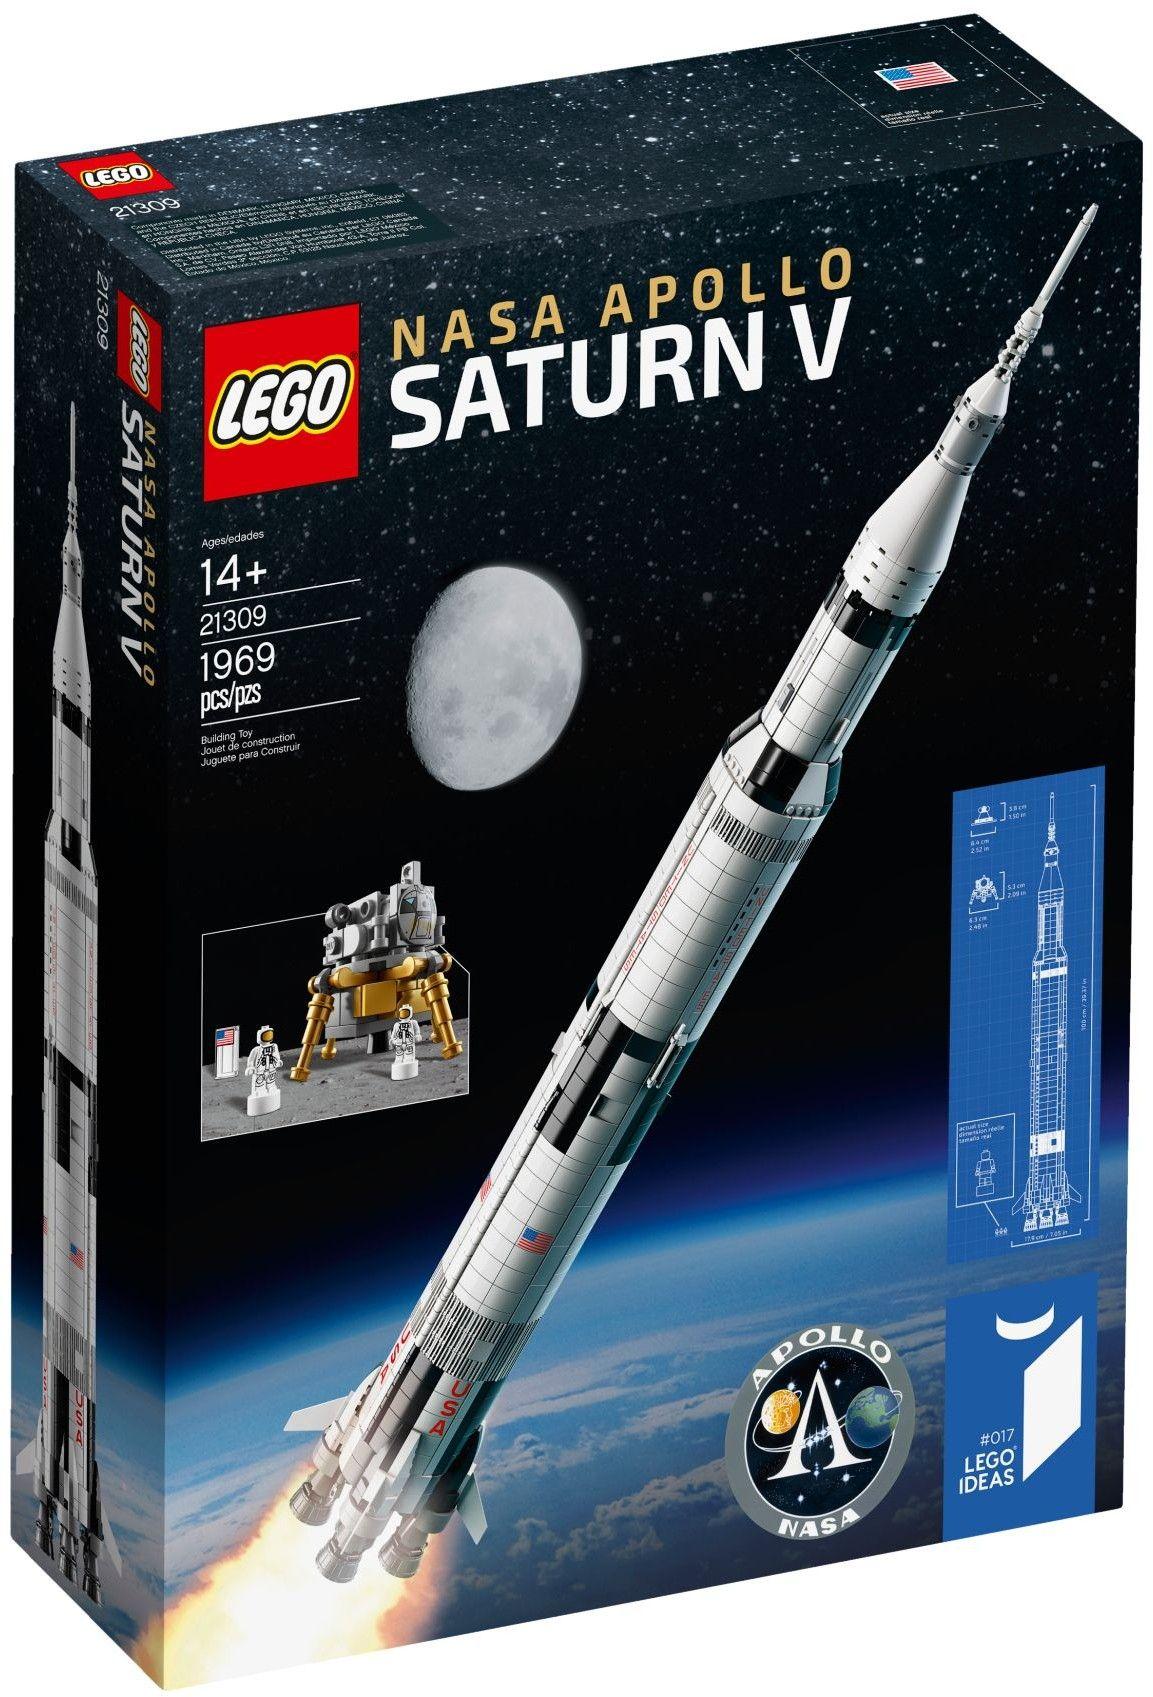 Saturn 5 Logo - LEGO Ideas 21309 NASA Apollo Saturn V review | Brickset: LEGO set ...